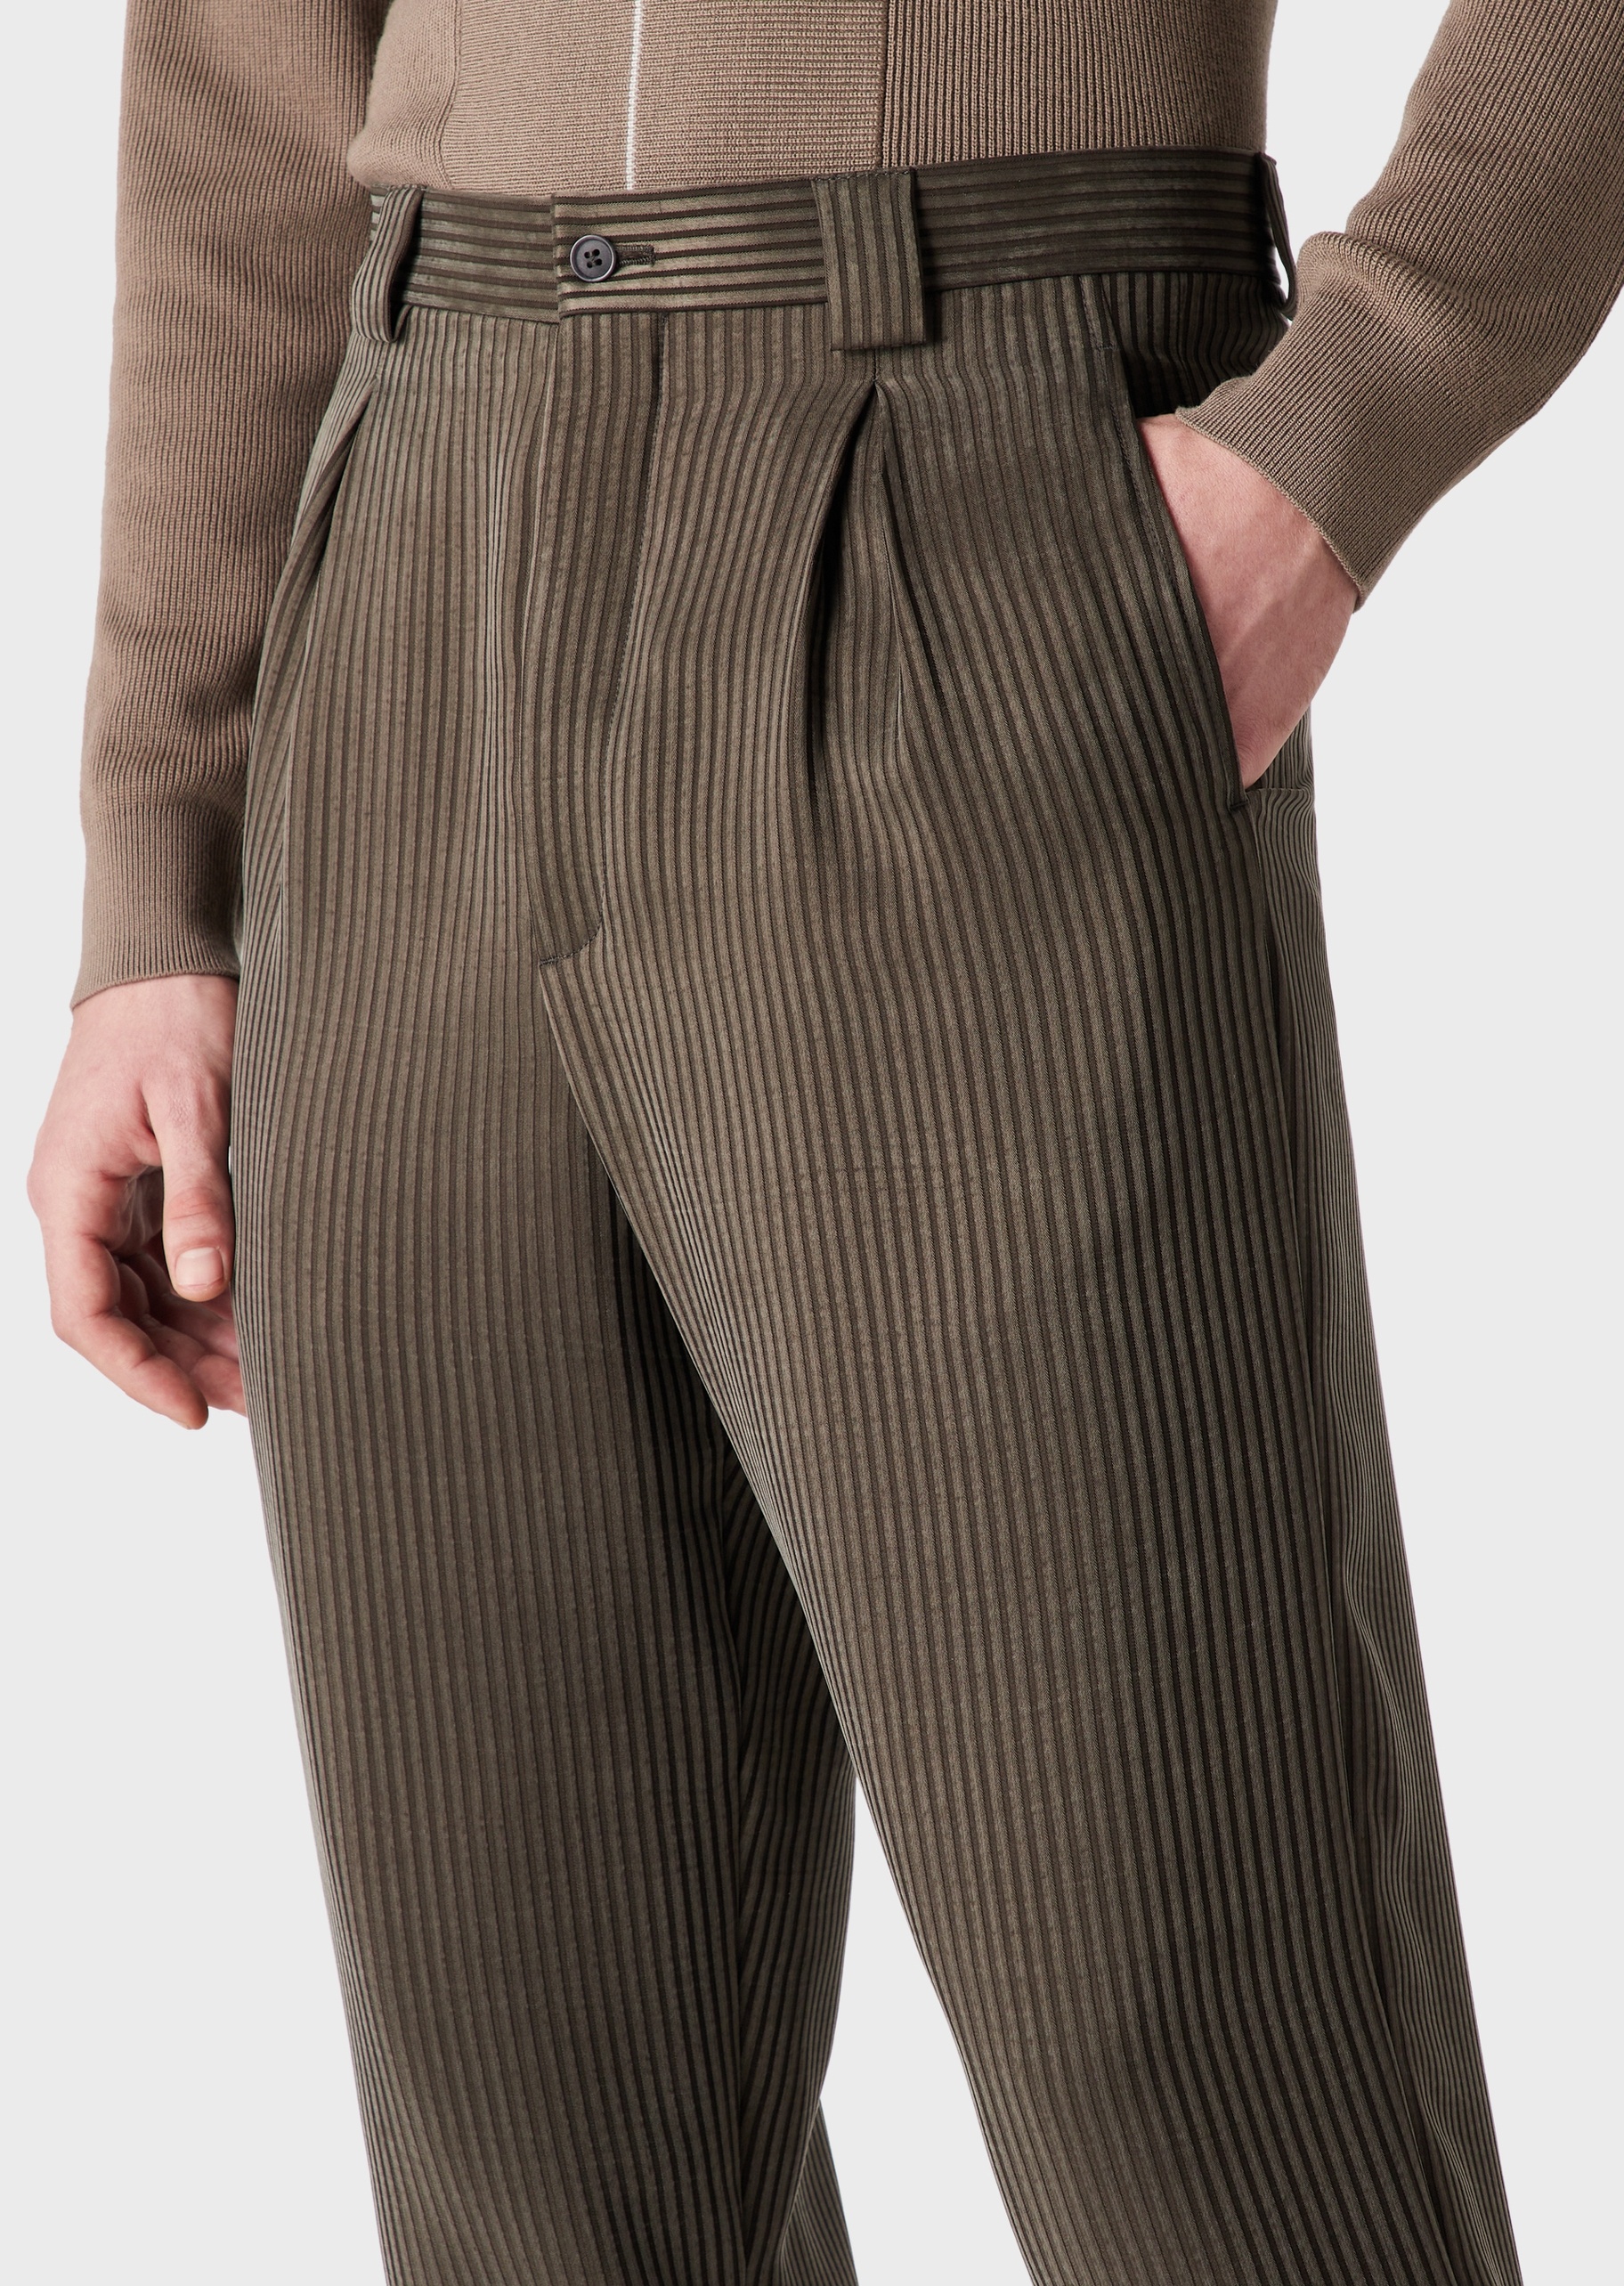 Giorgio Armani 男士复古半活褶宽松直筒细条纹休闲裤